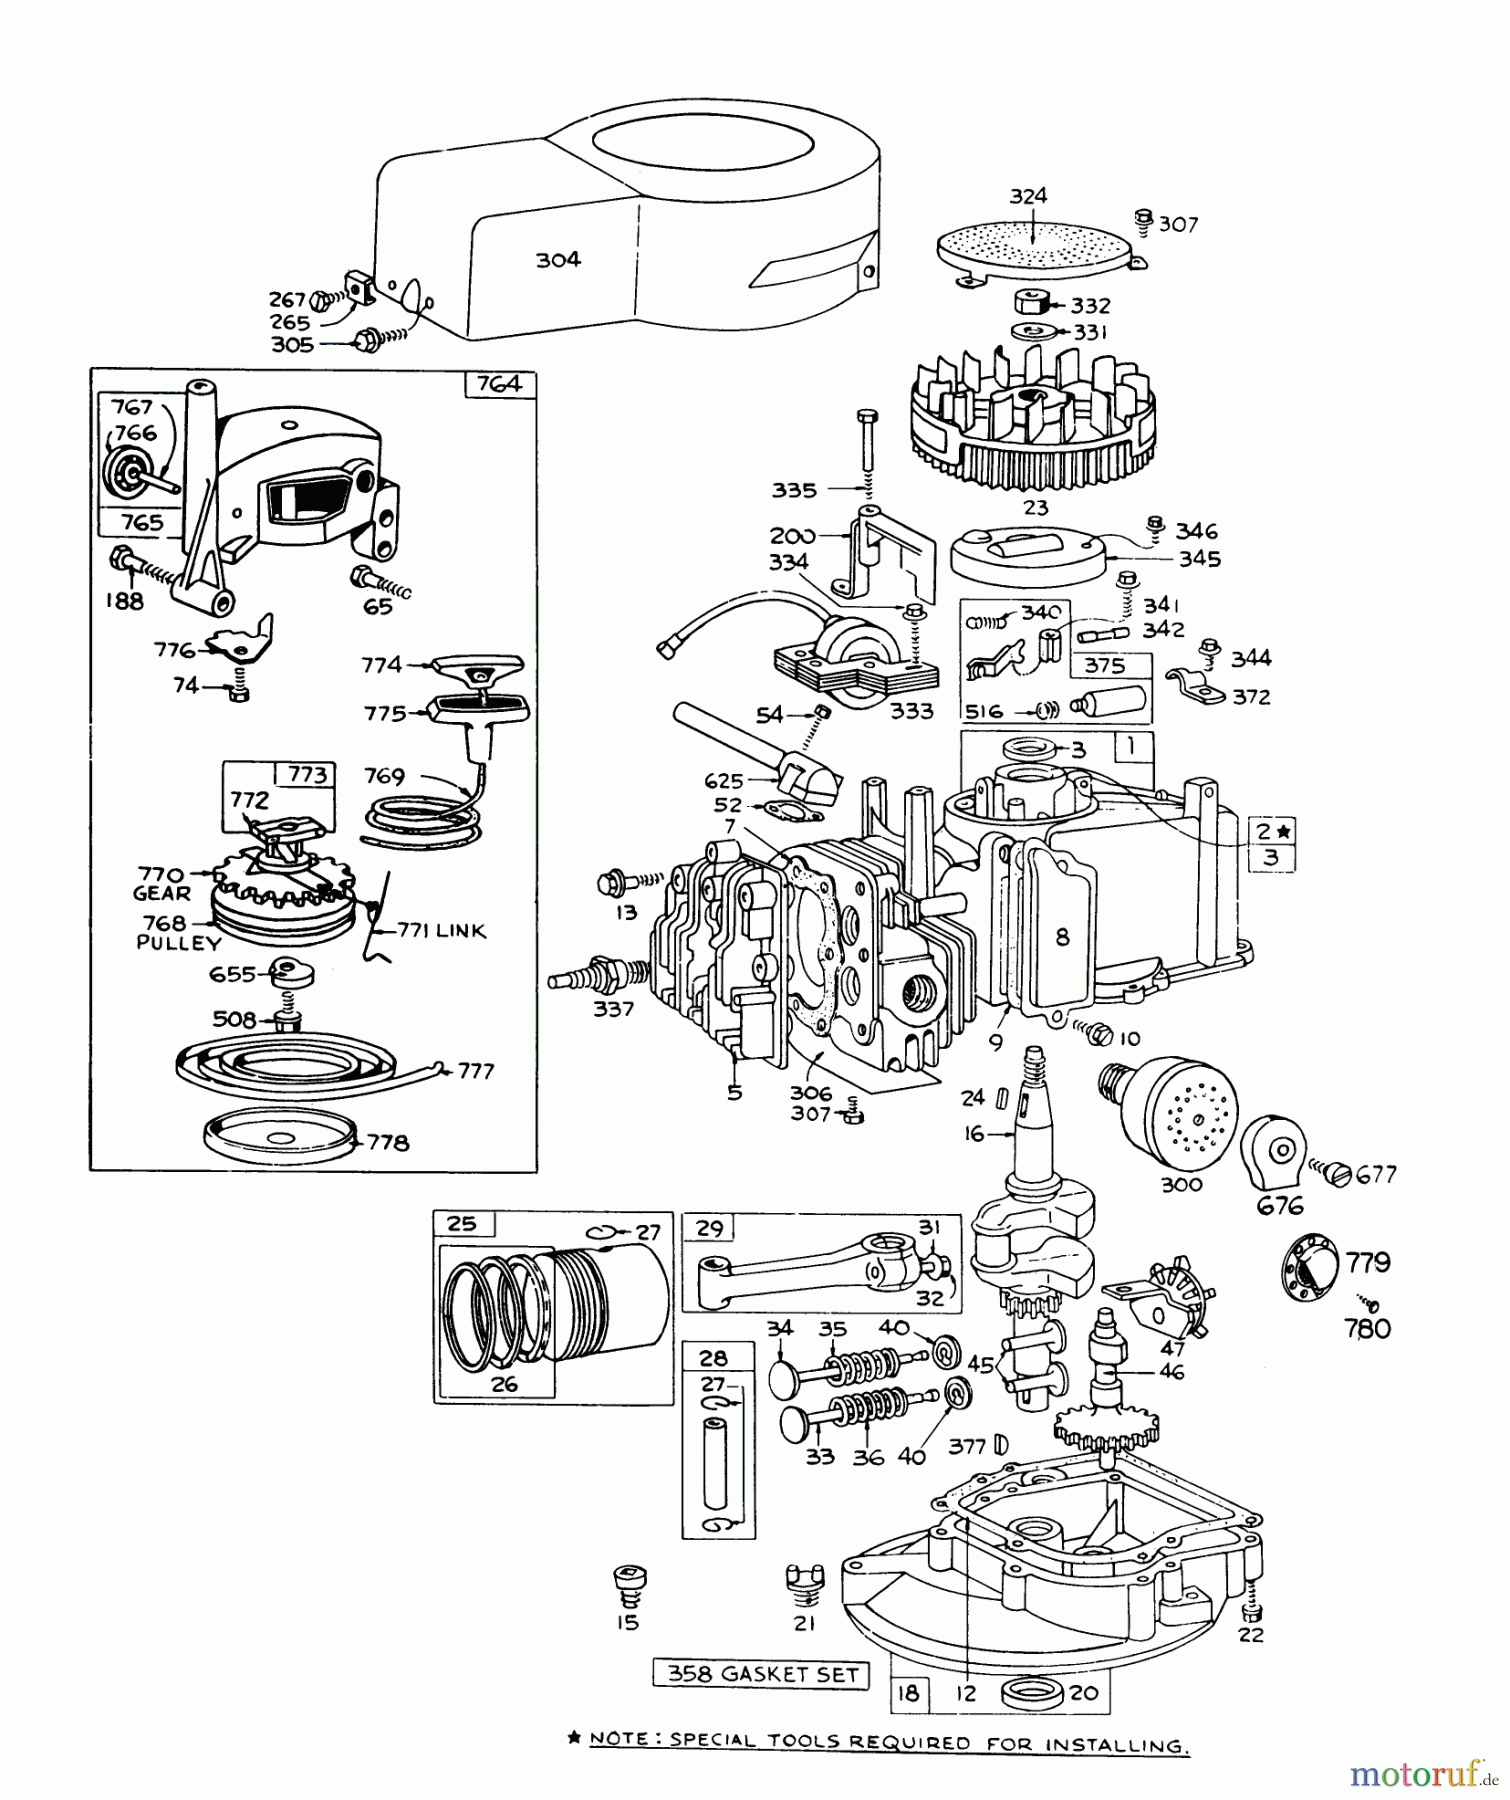  Toro Neu Mowers, Walk-Behind Seite 1 16155 - Toro Whirlwind II Lawnmower, 1978 (8000001-8999999) ENGINE BRIGGS & STRATTON MODEL 92508-0985-01 FOR 19